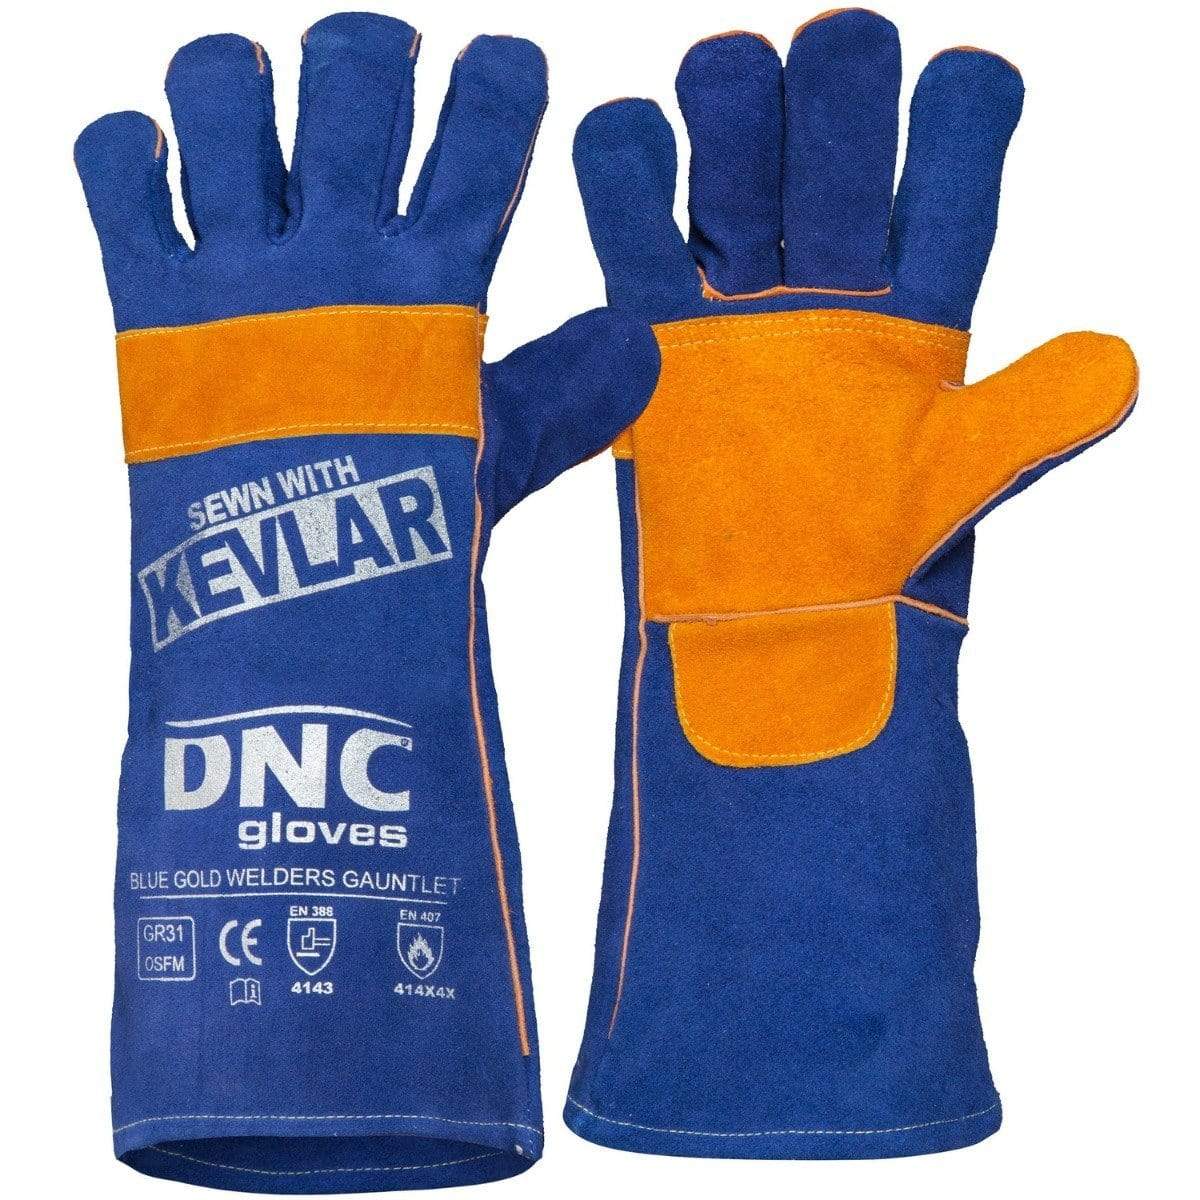 Dnc Workwear Blue  Gold Welders Gauntlet - GR31 PPE DNC Workwear Blue/Gold One Size 